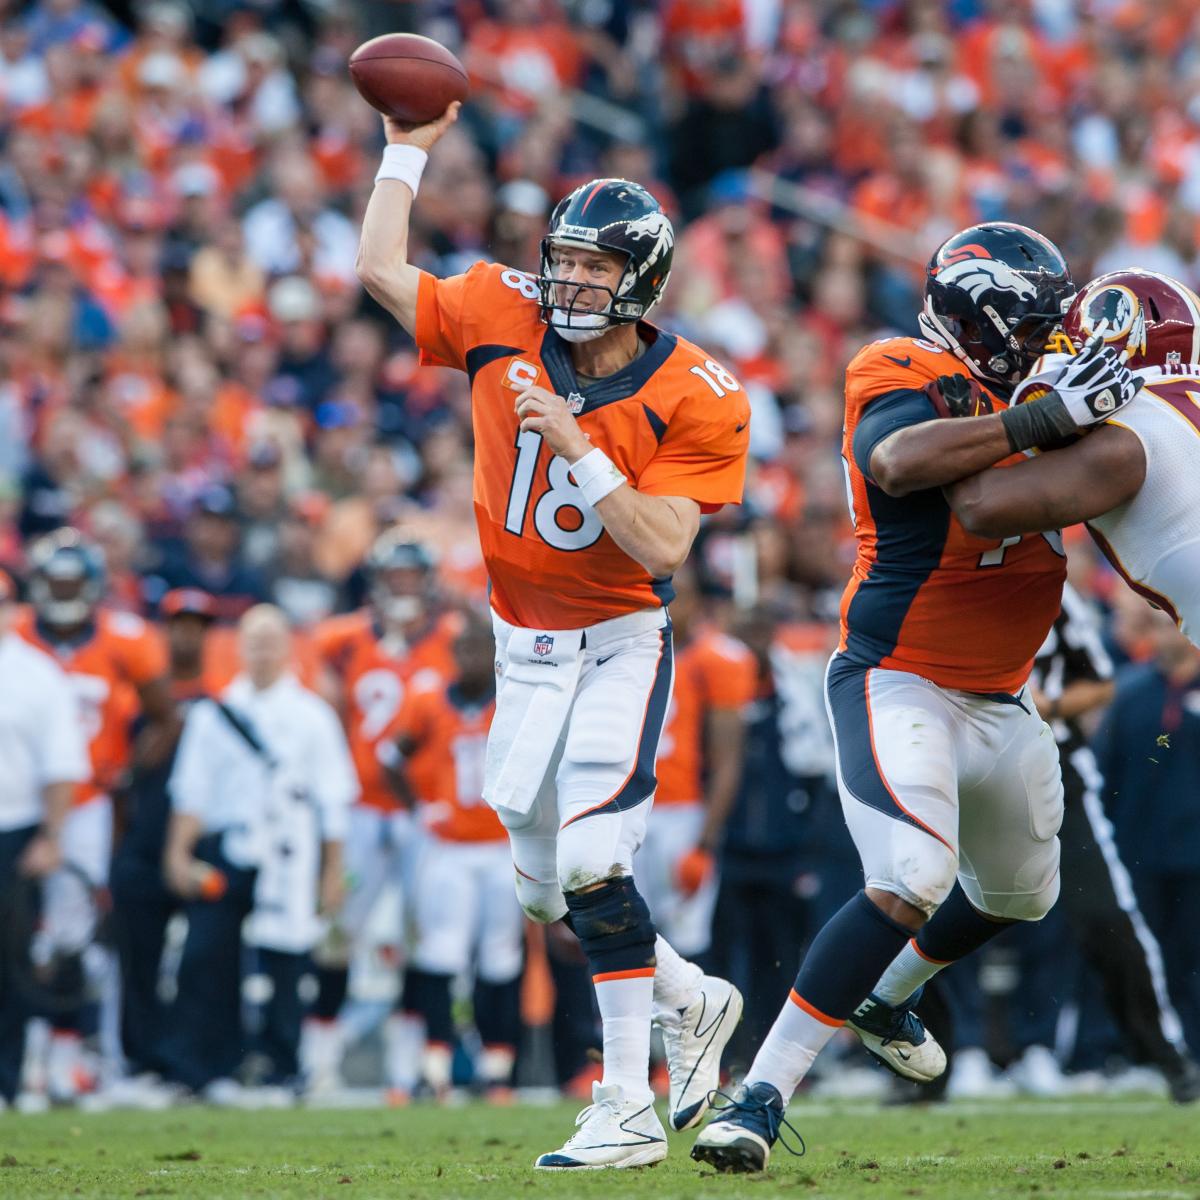 Would you rather have John Elway or Peyton Manning at quarterback?